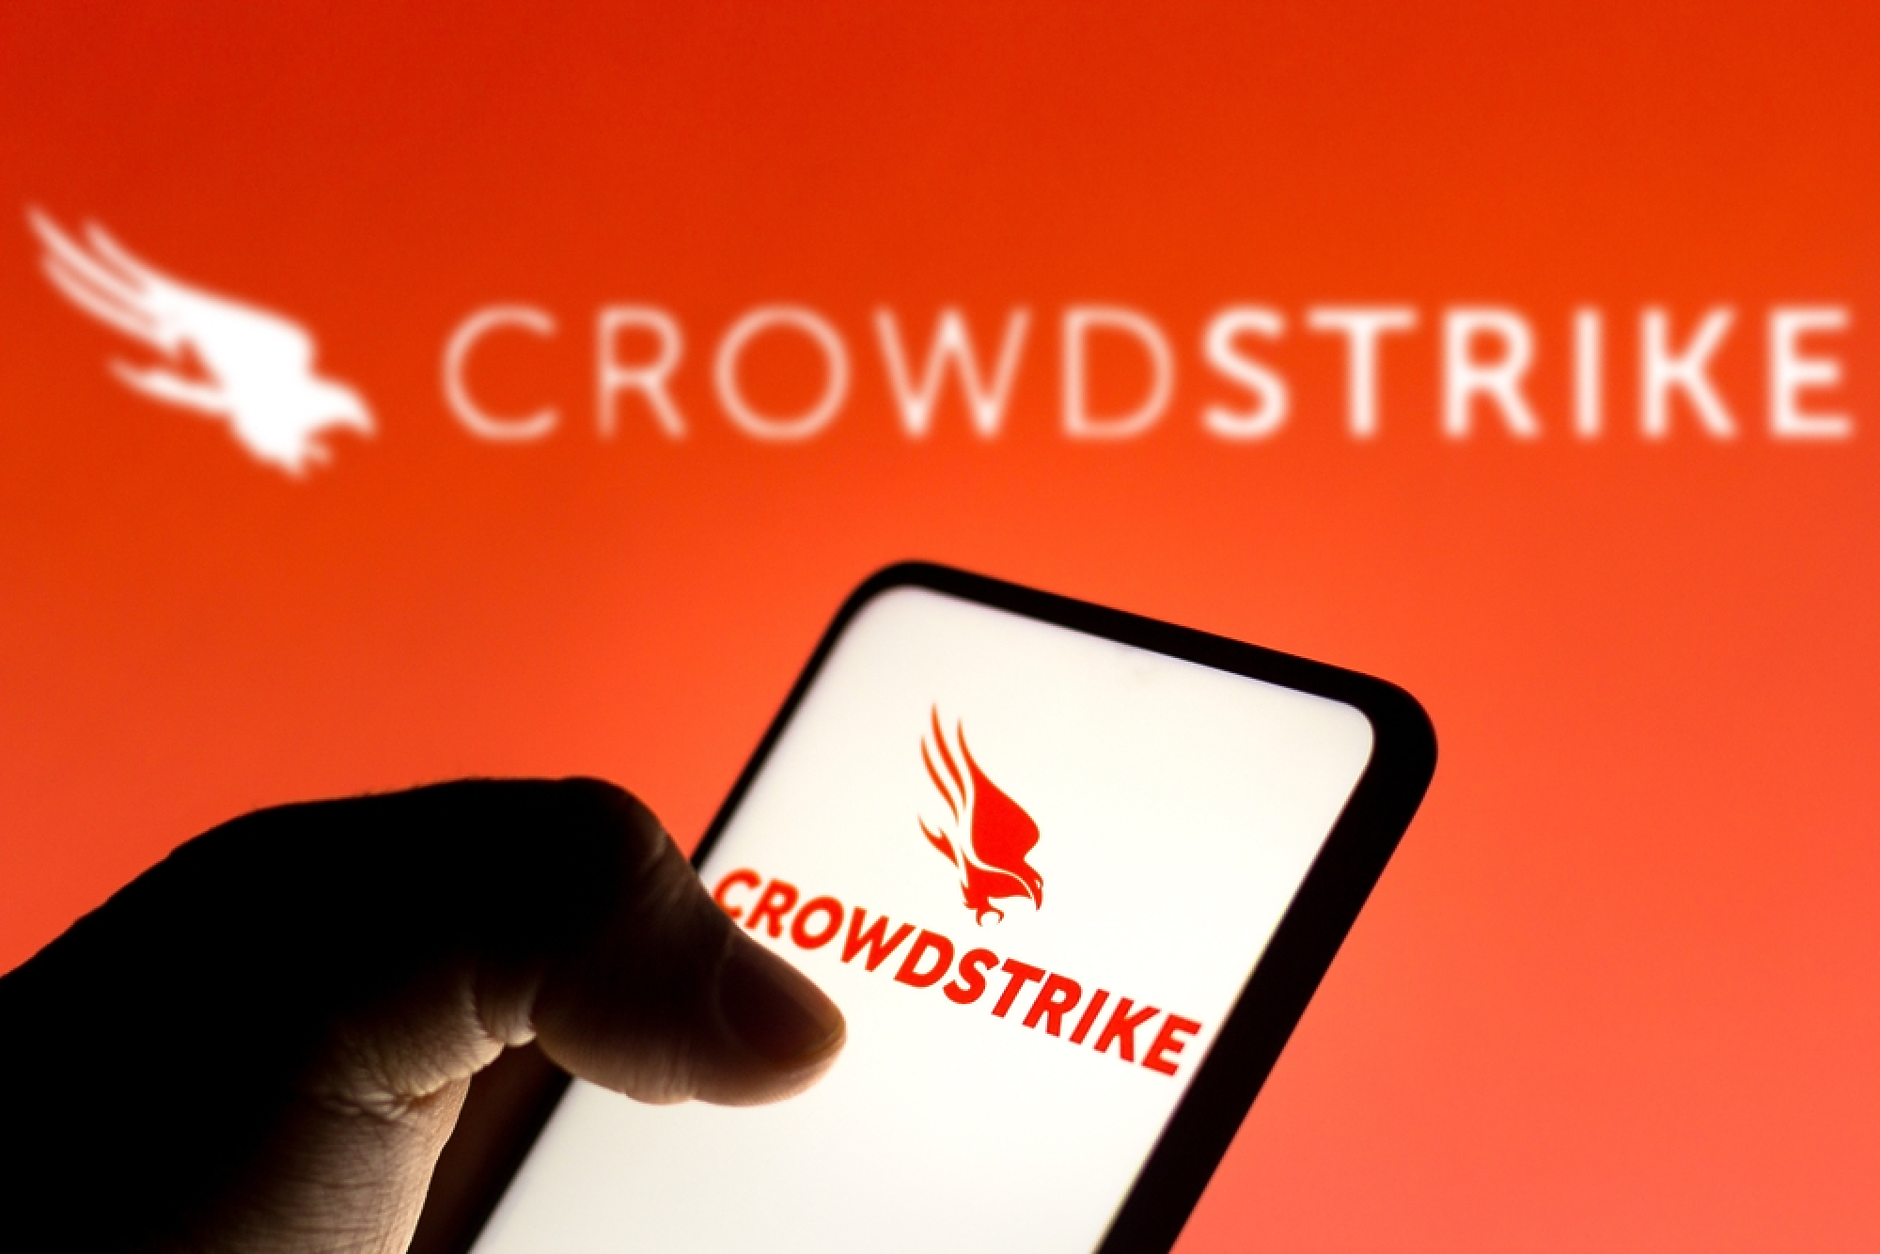 Акционери съдят CrowdStrike заради глобалния ИТ срив